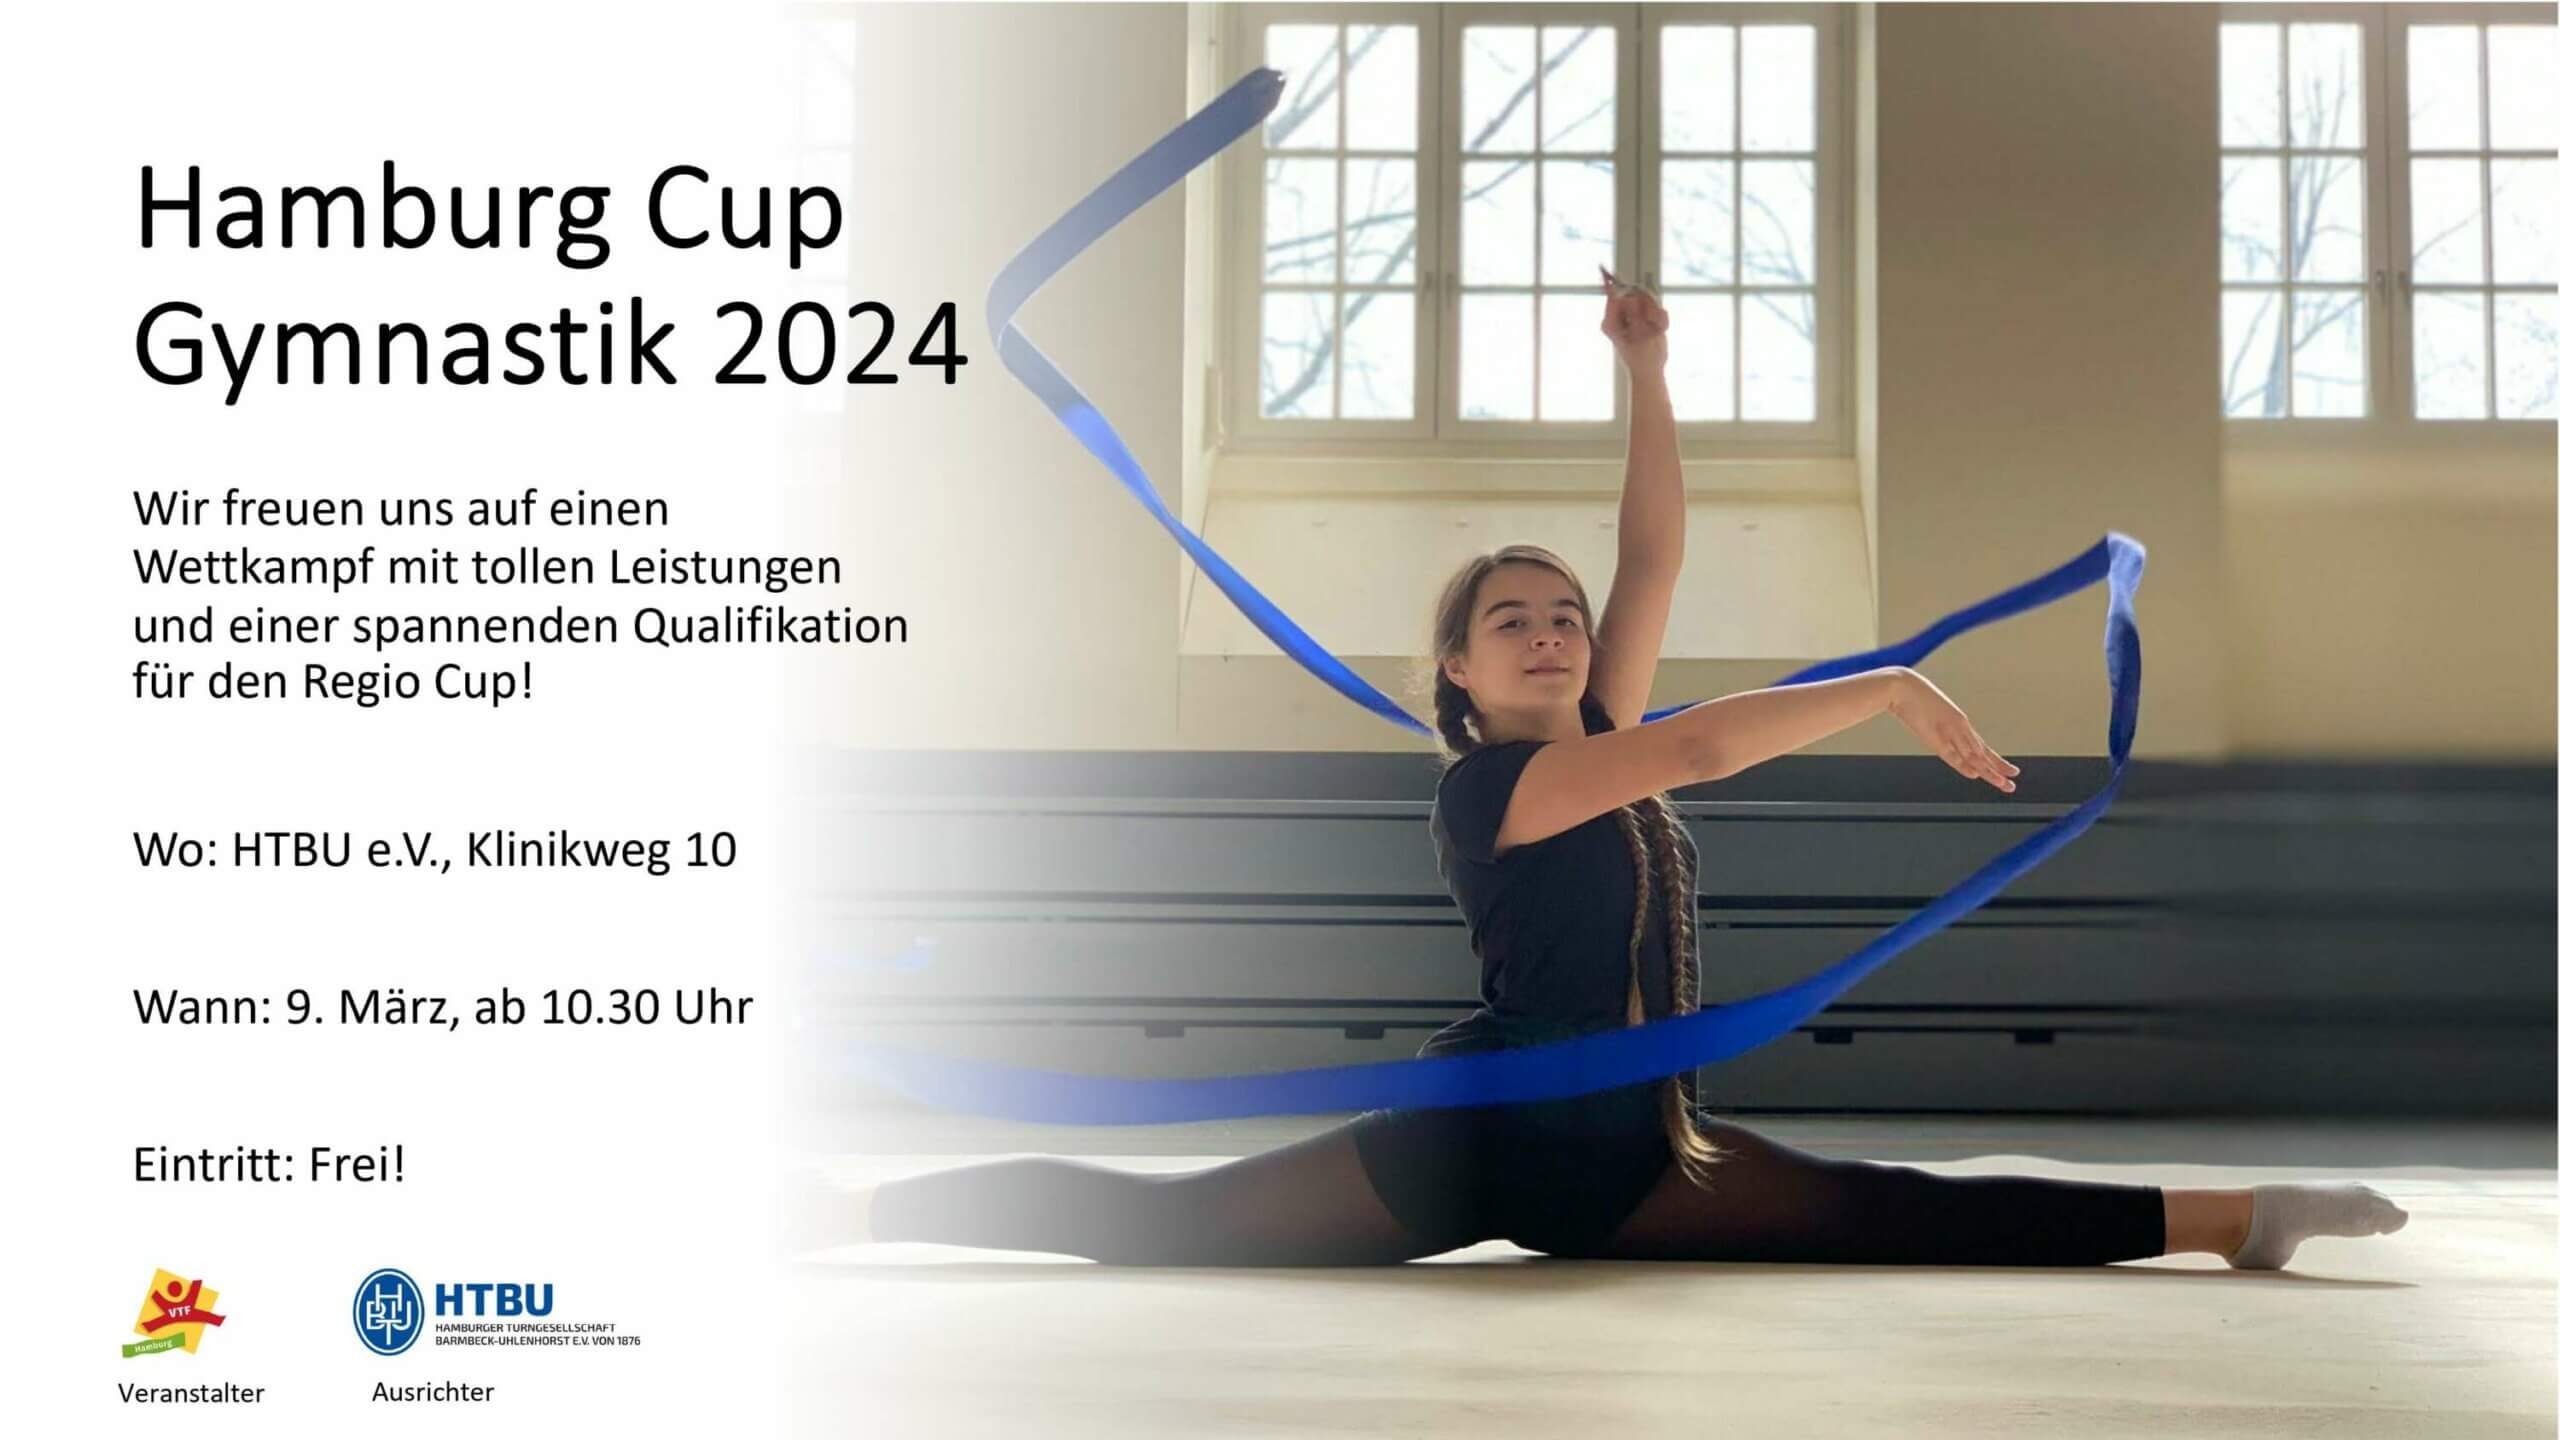 Plakatmoritv für den Hamburg Cup Gymnastik 2024, eine Gymnstin mit blauem Band sitzt am Boden im Spagat.